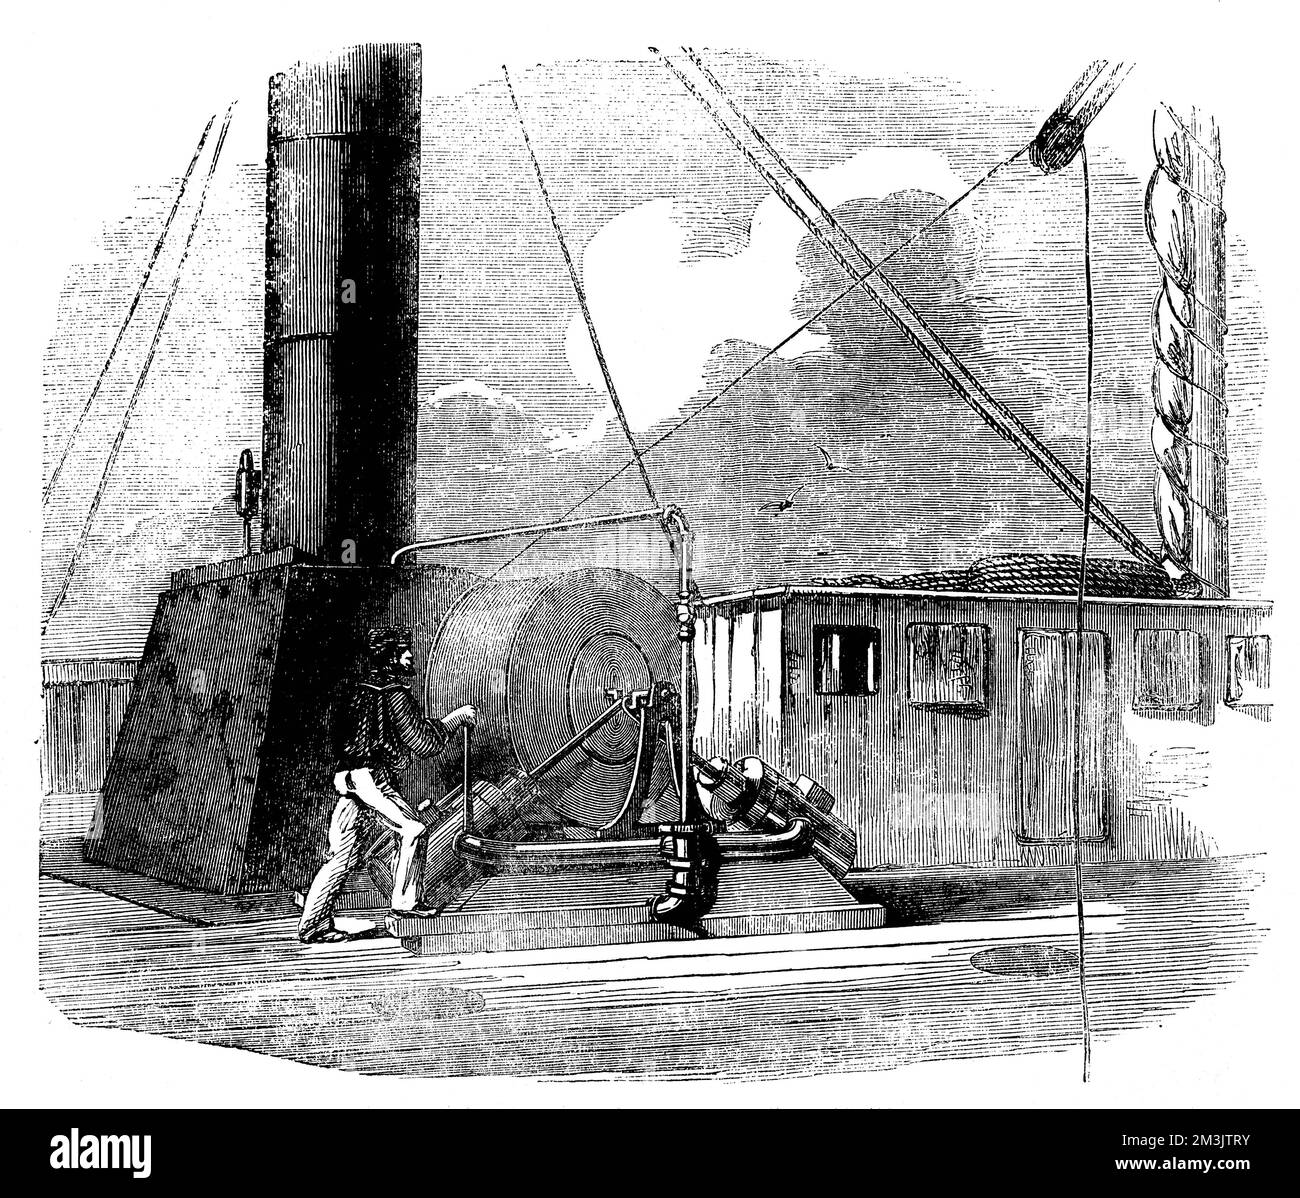 La bobine de câble et la machine à vapeur sur le navire à vapeur de la marine des États-Unis 'Arctic', tout en sonnant l'Atlantique. La machine à vapeur a été utilisée pour récupérer la ligne des grandes profondeurs de l'océan. Ce projet a été entrepris en vue de la pose du premier câble télégraphique de l'Atlantique. 1856 Banque D'Images